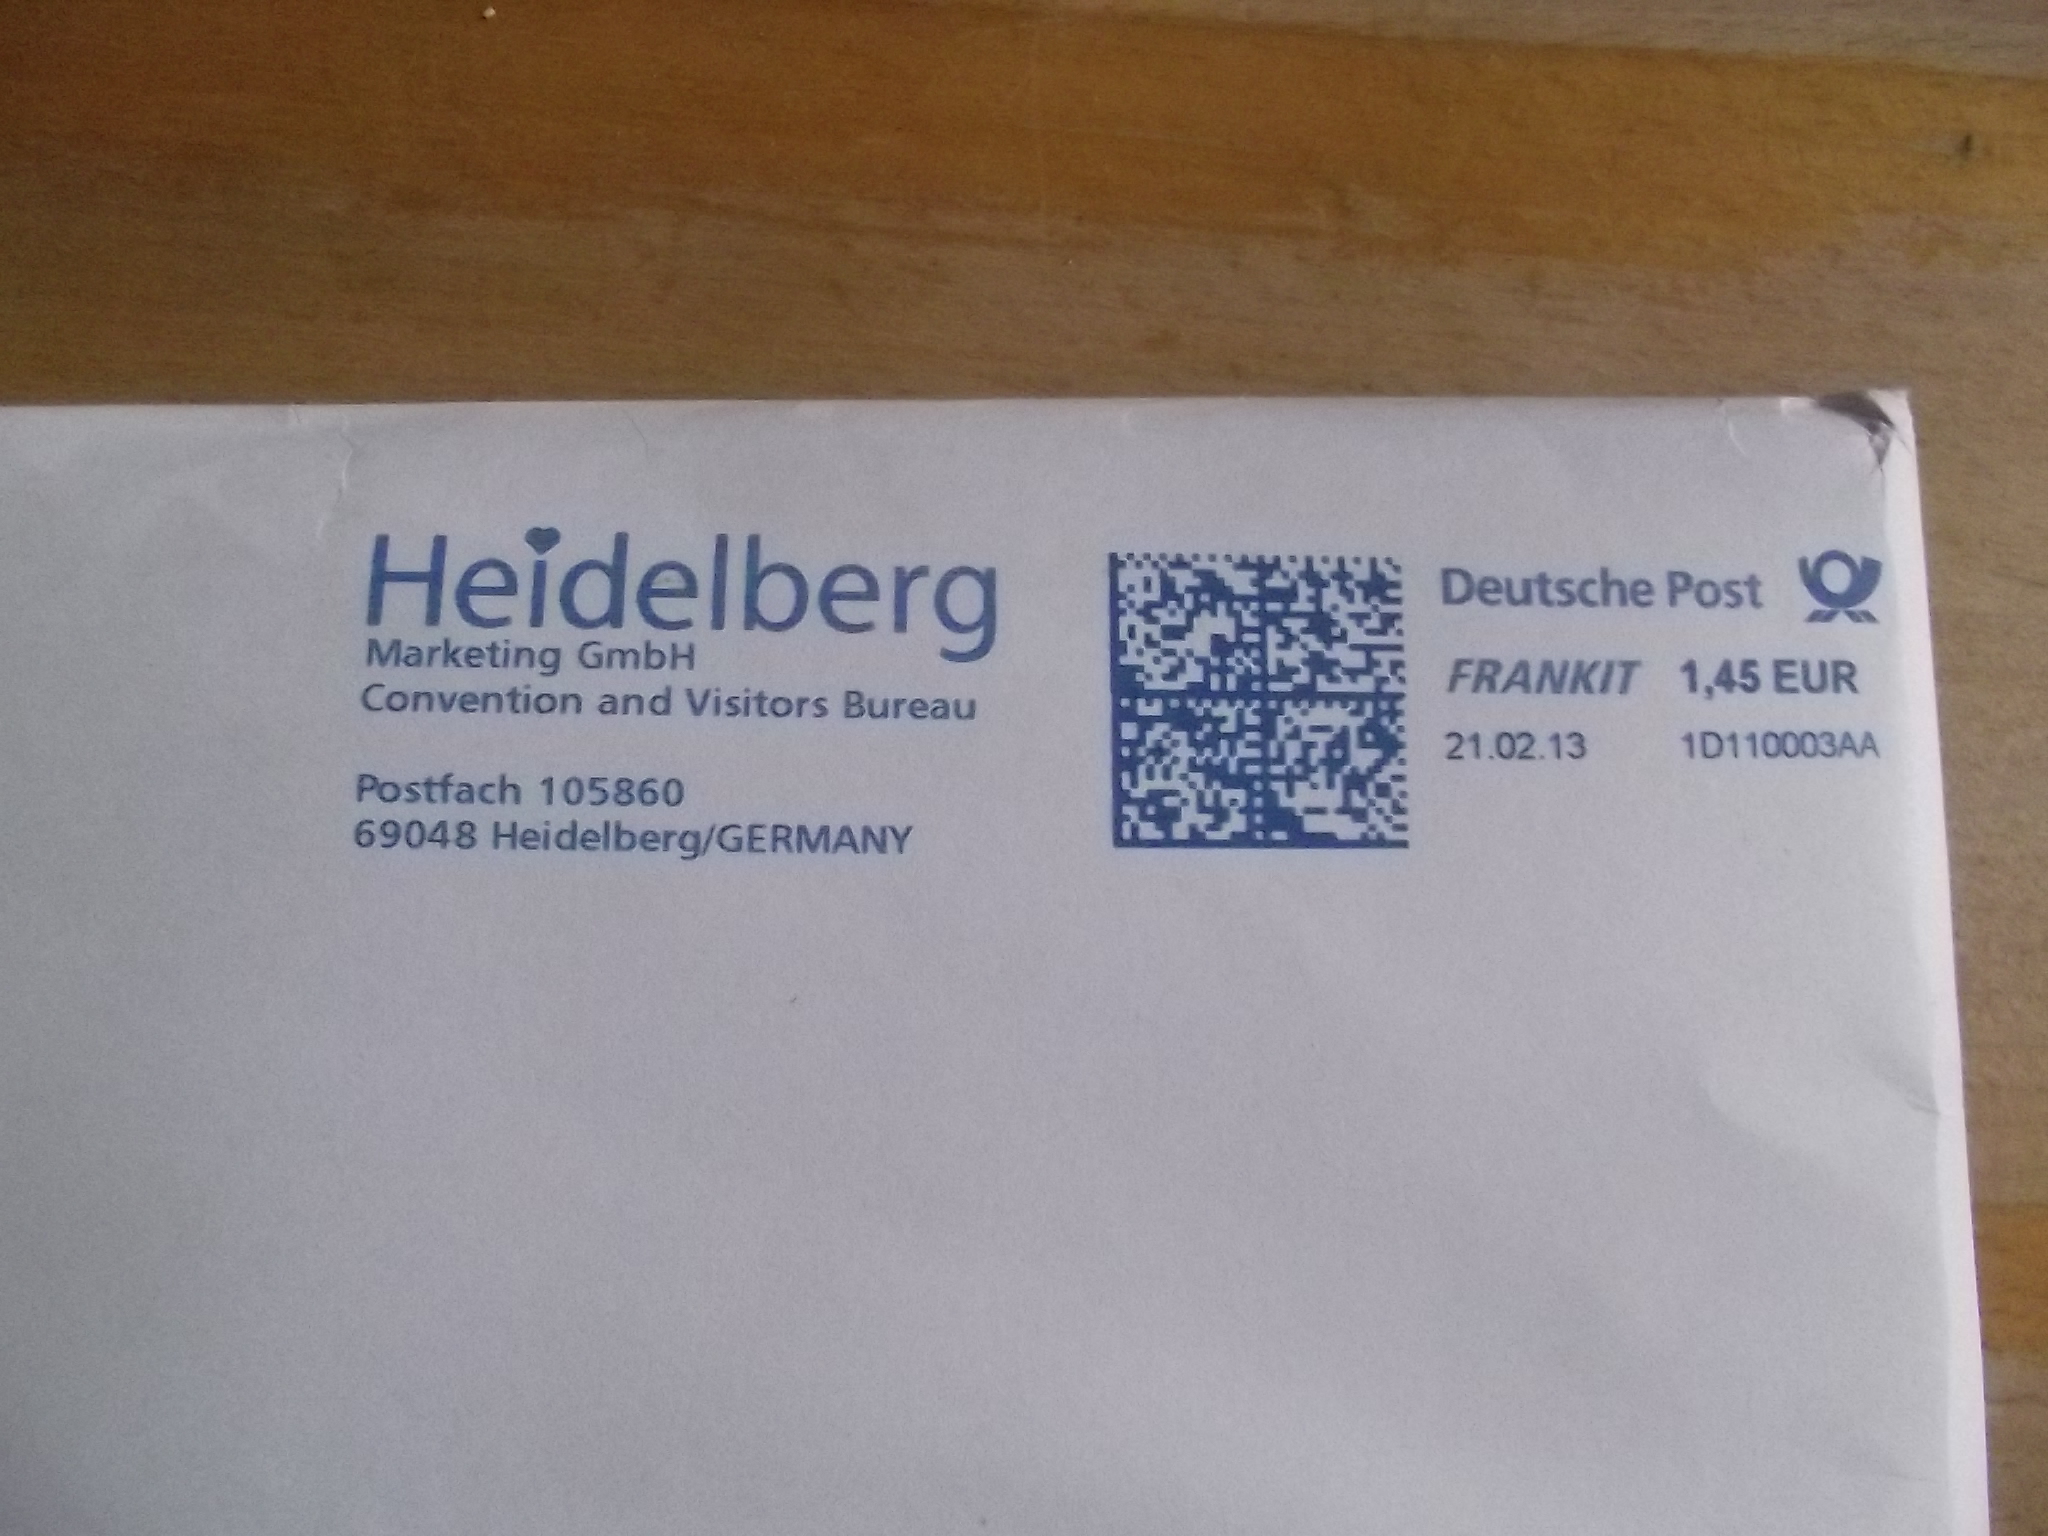 &apos;touristinfo@heidelberg-marketing.de&apos;